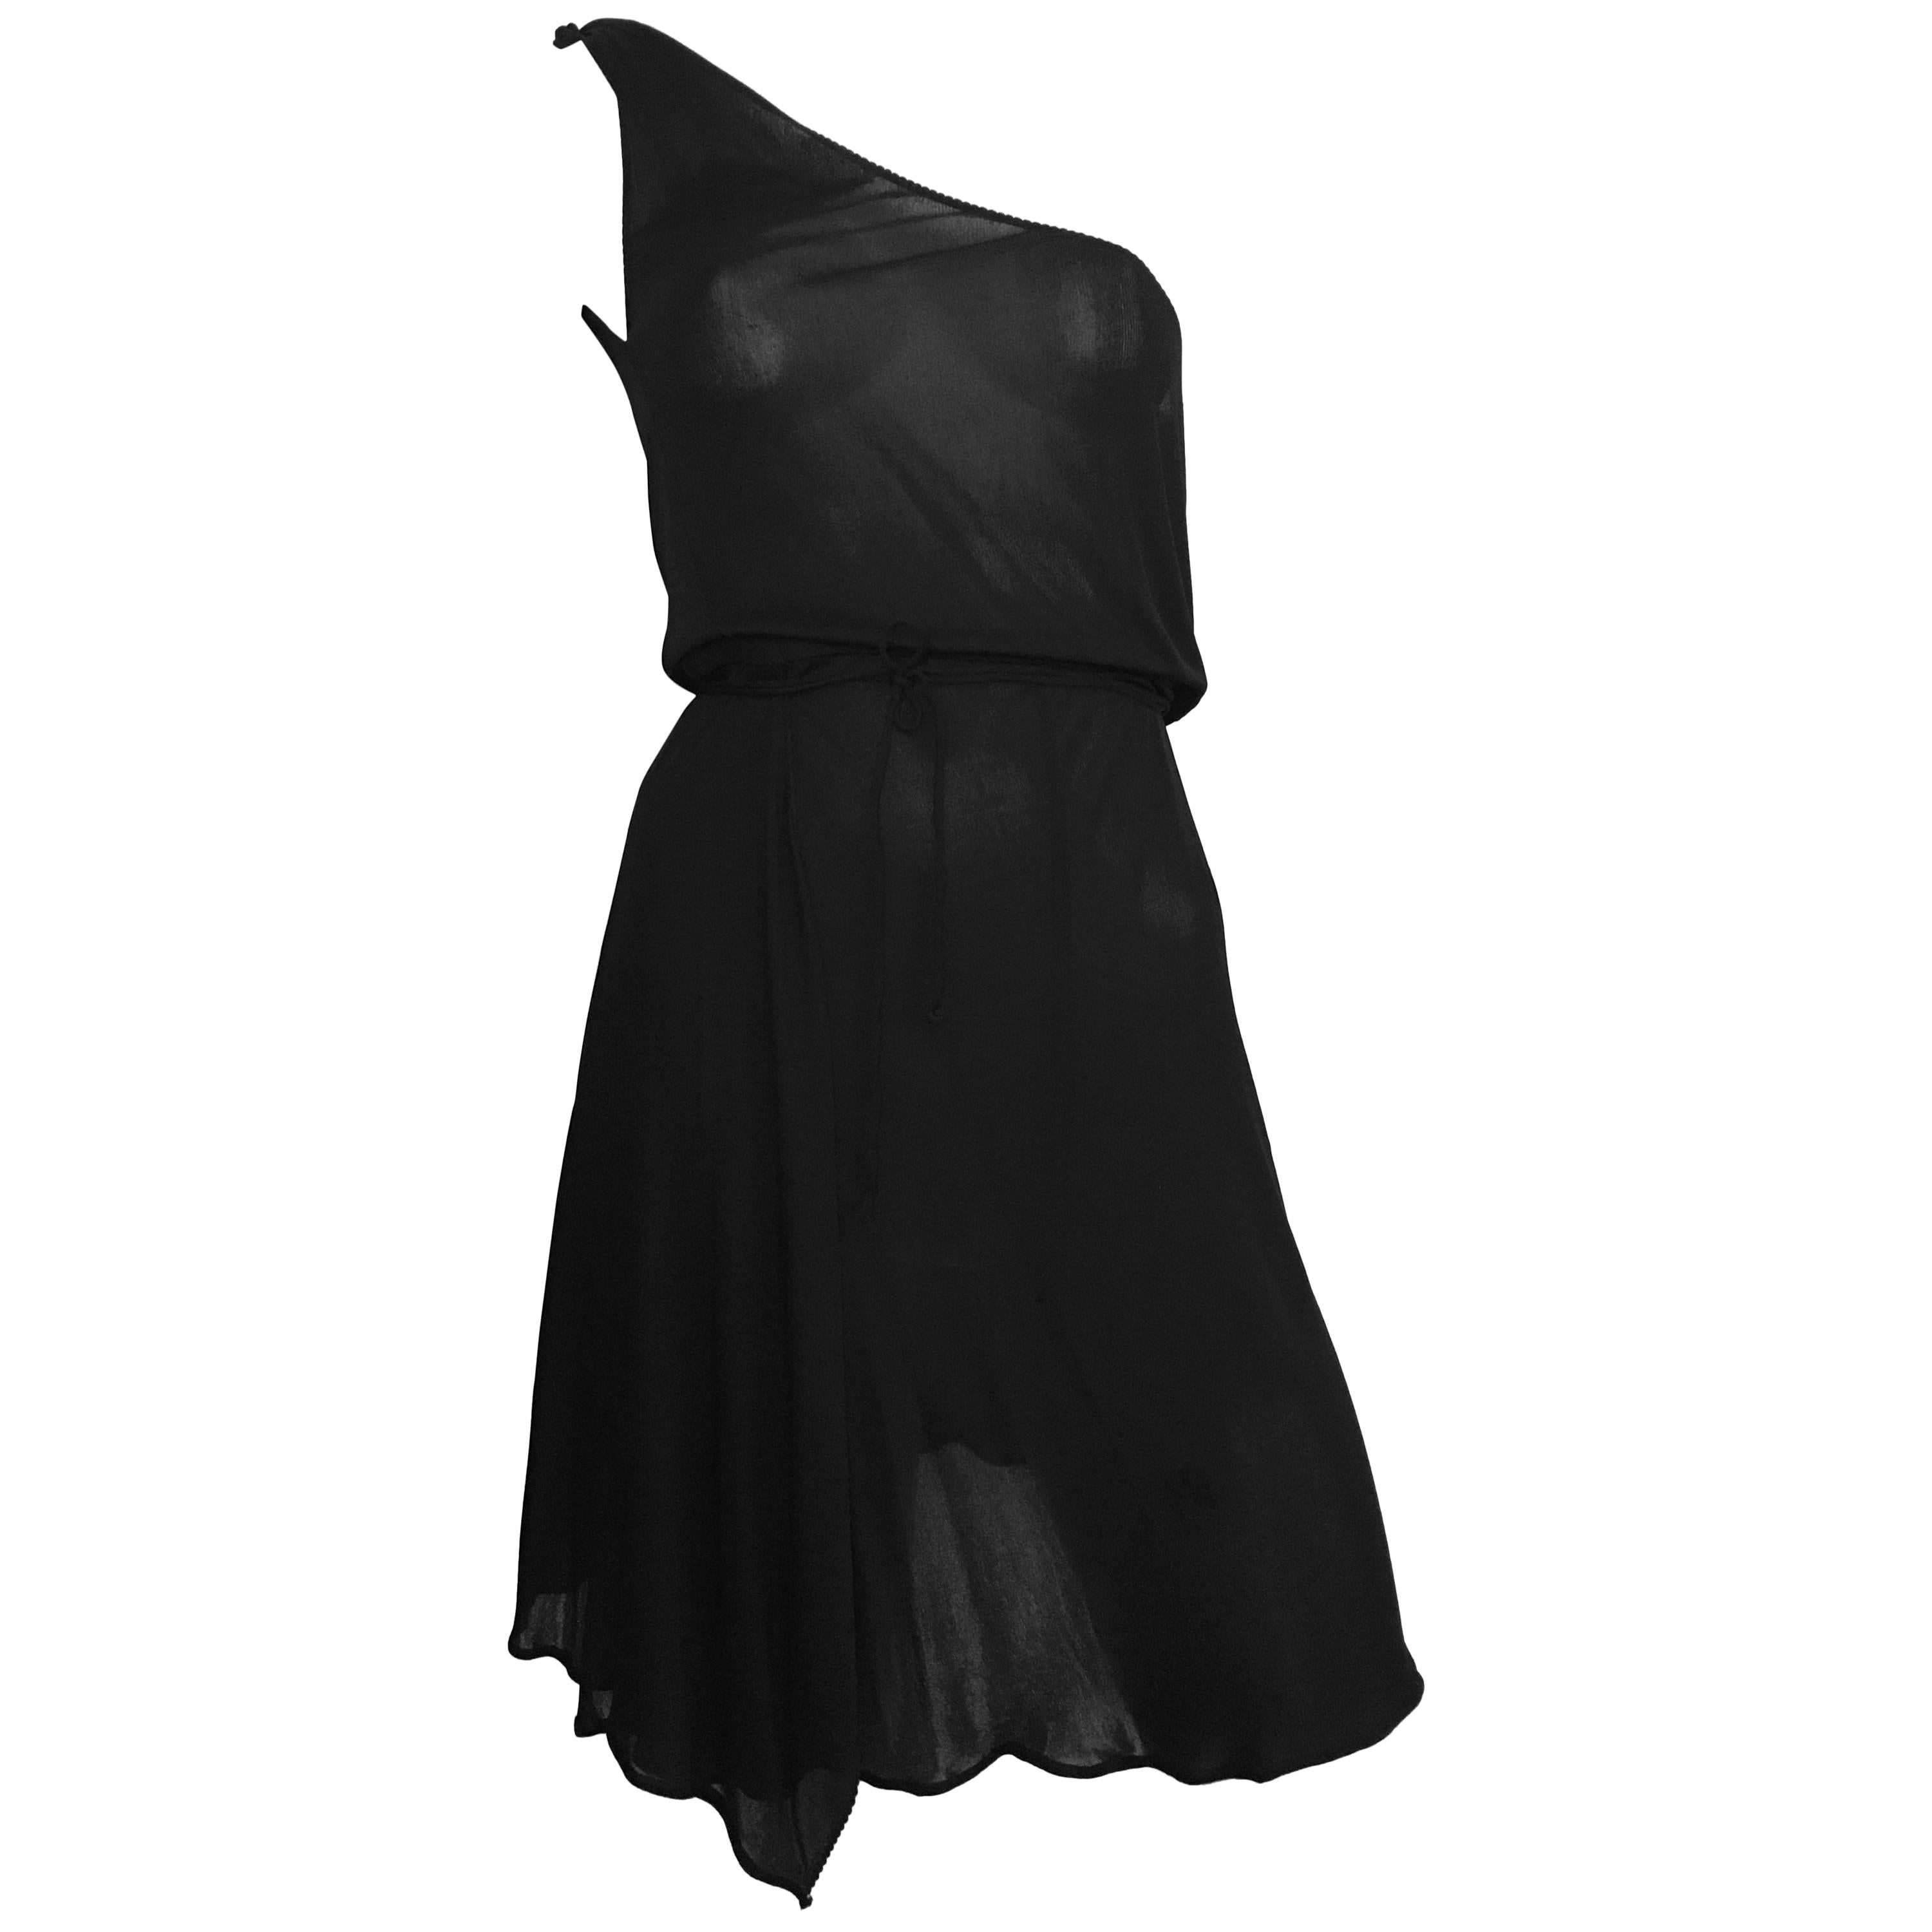 Stephen Burrows for Henri Bendel Black Jersey One Shoulder Dress Size 4/6. For Sale